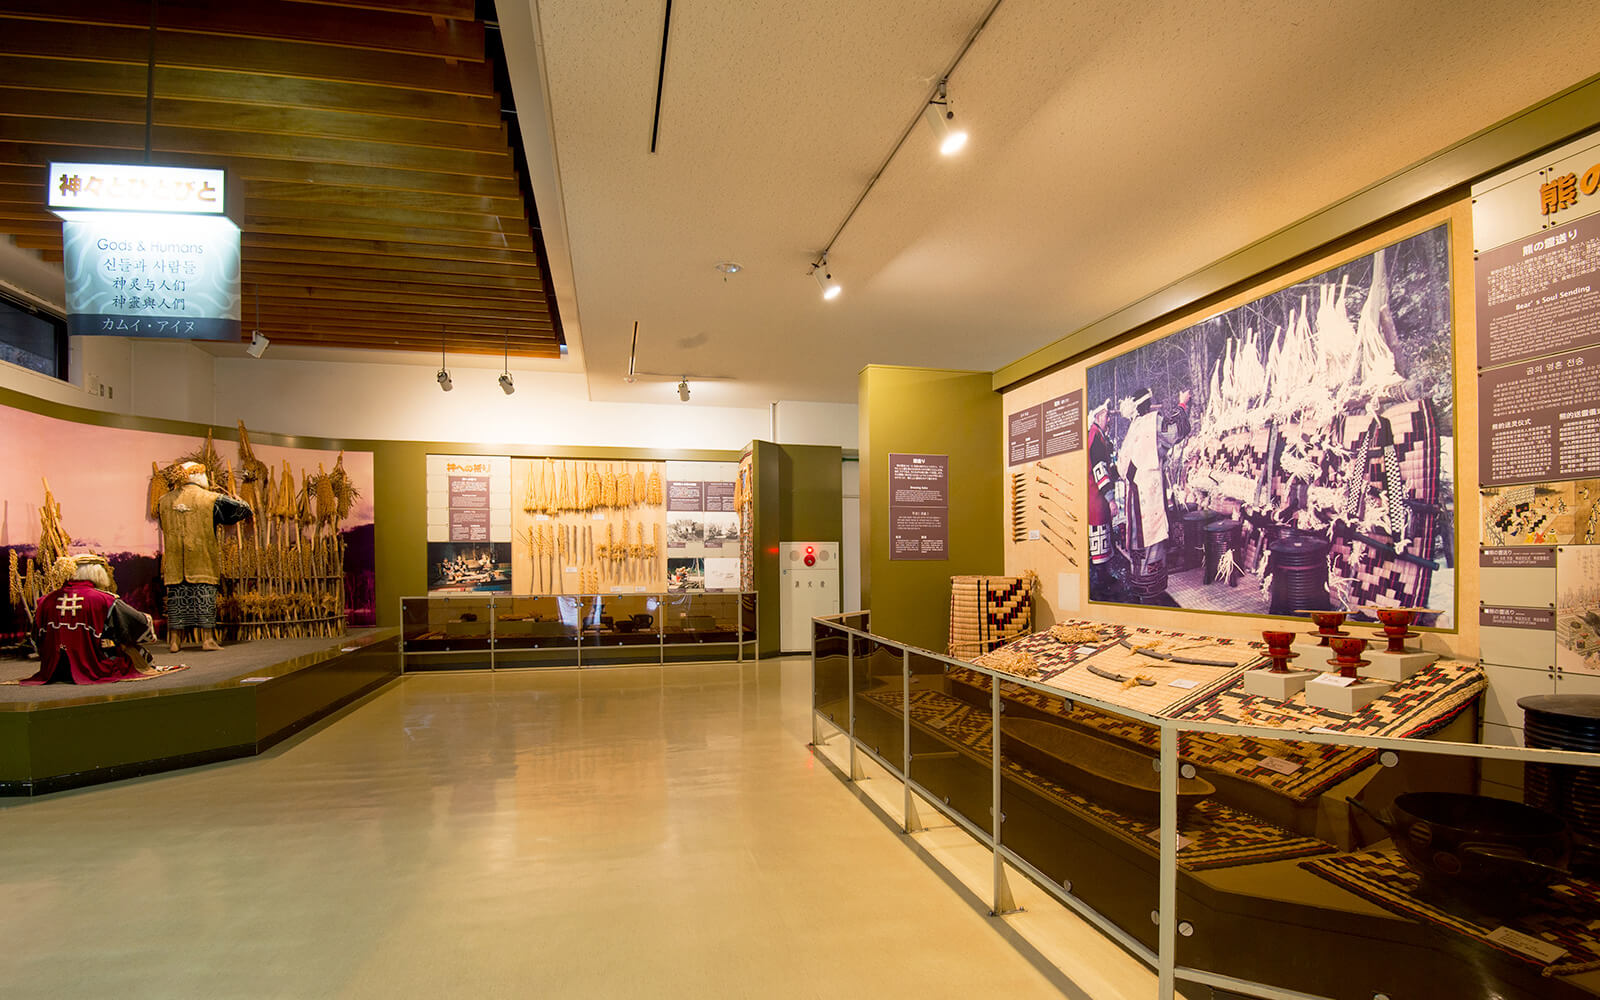 数多くのアイヌに関するコンテンツが展示されている (一財)アイヌ民族博物館